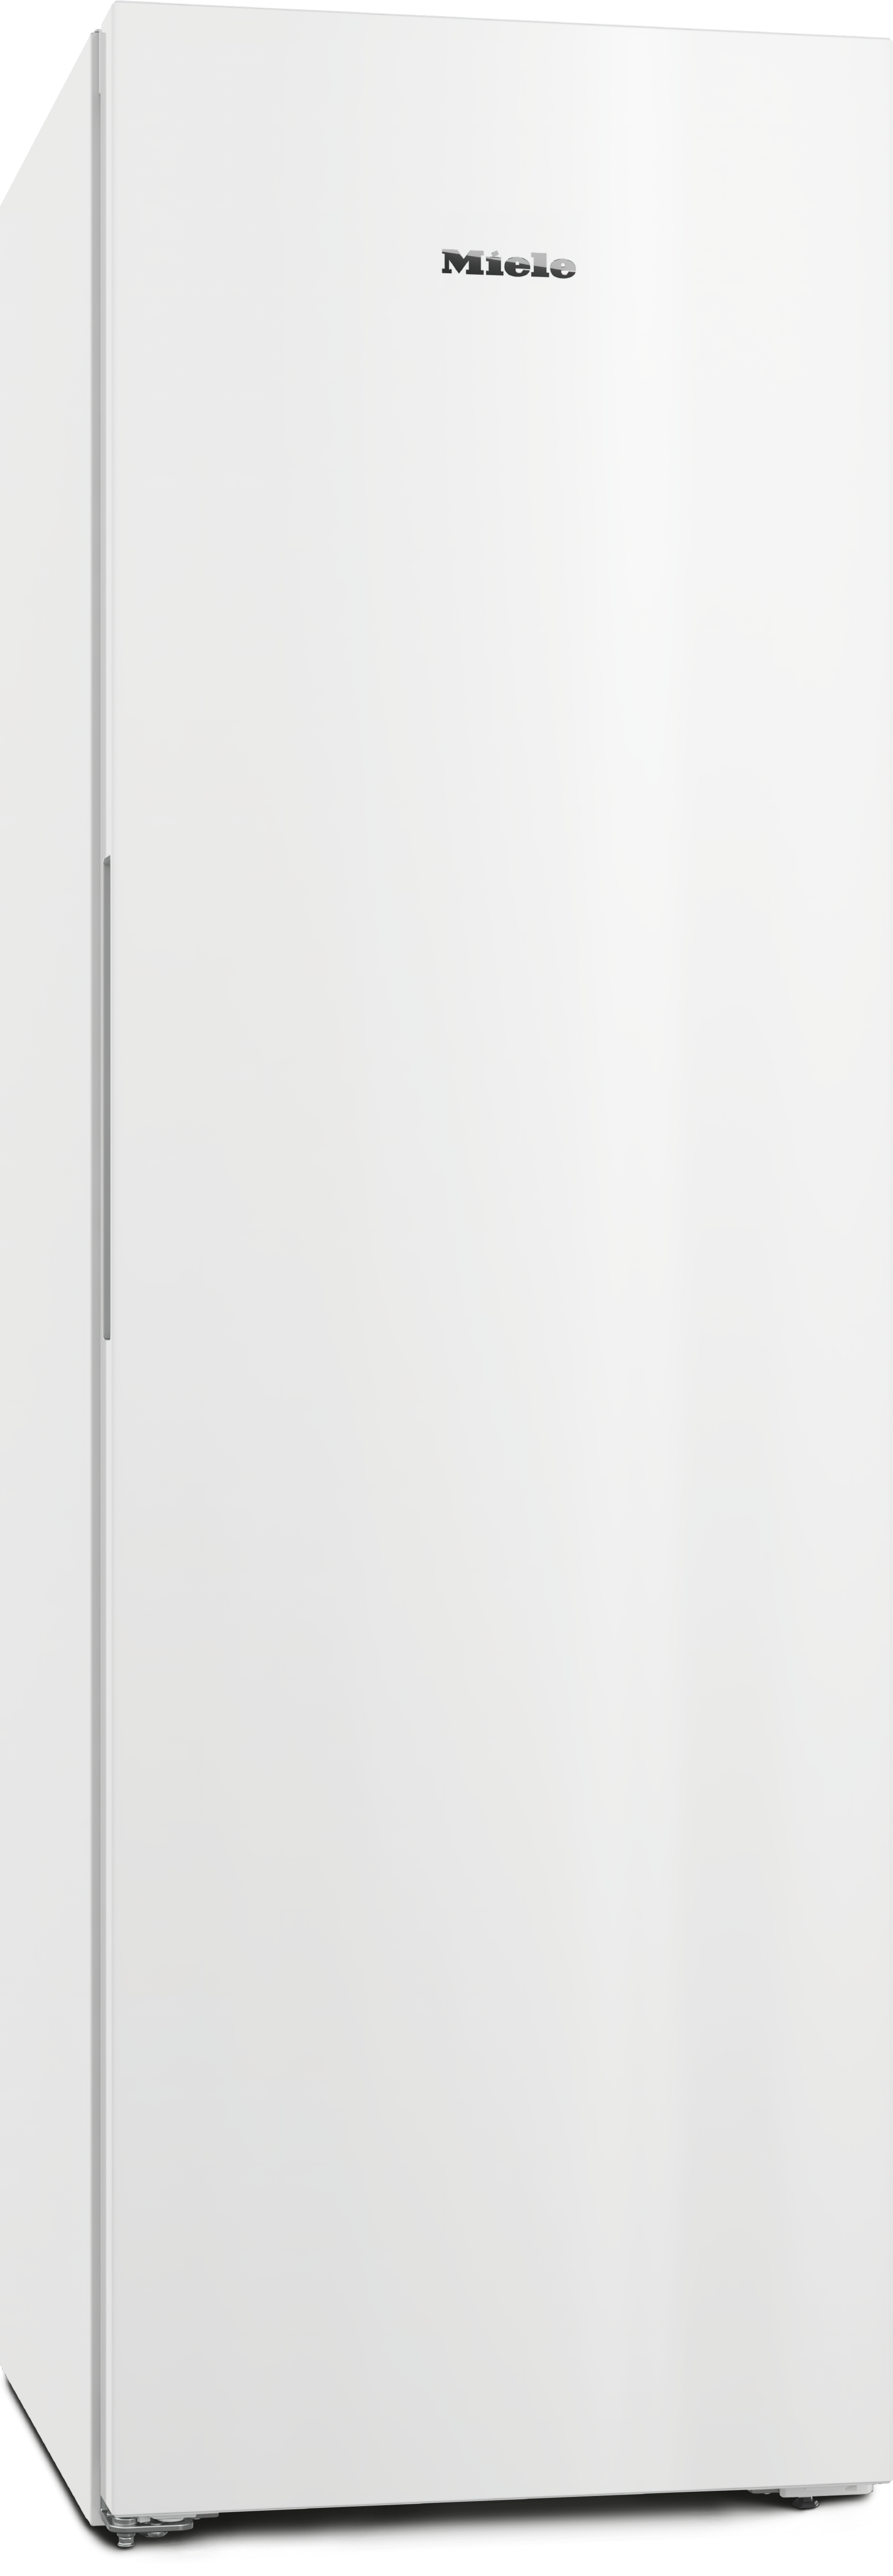 Refrigeração - FNS 4382 D Branco - 1